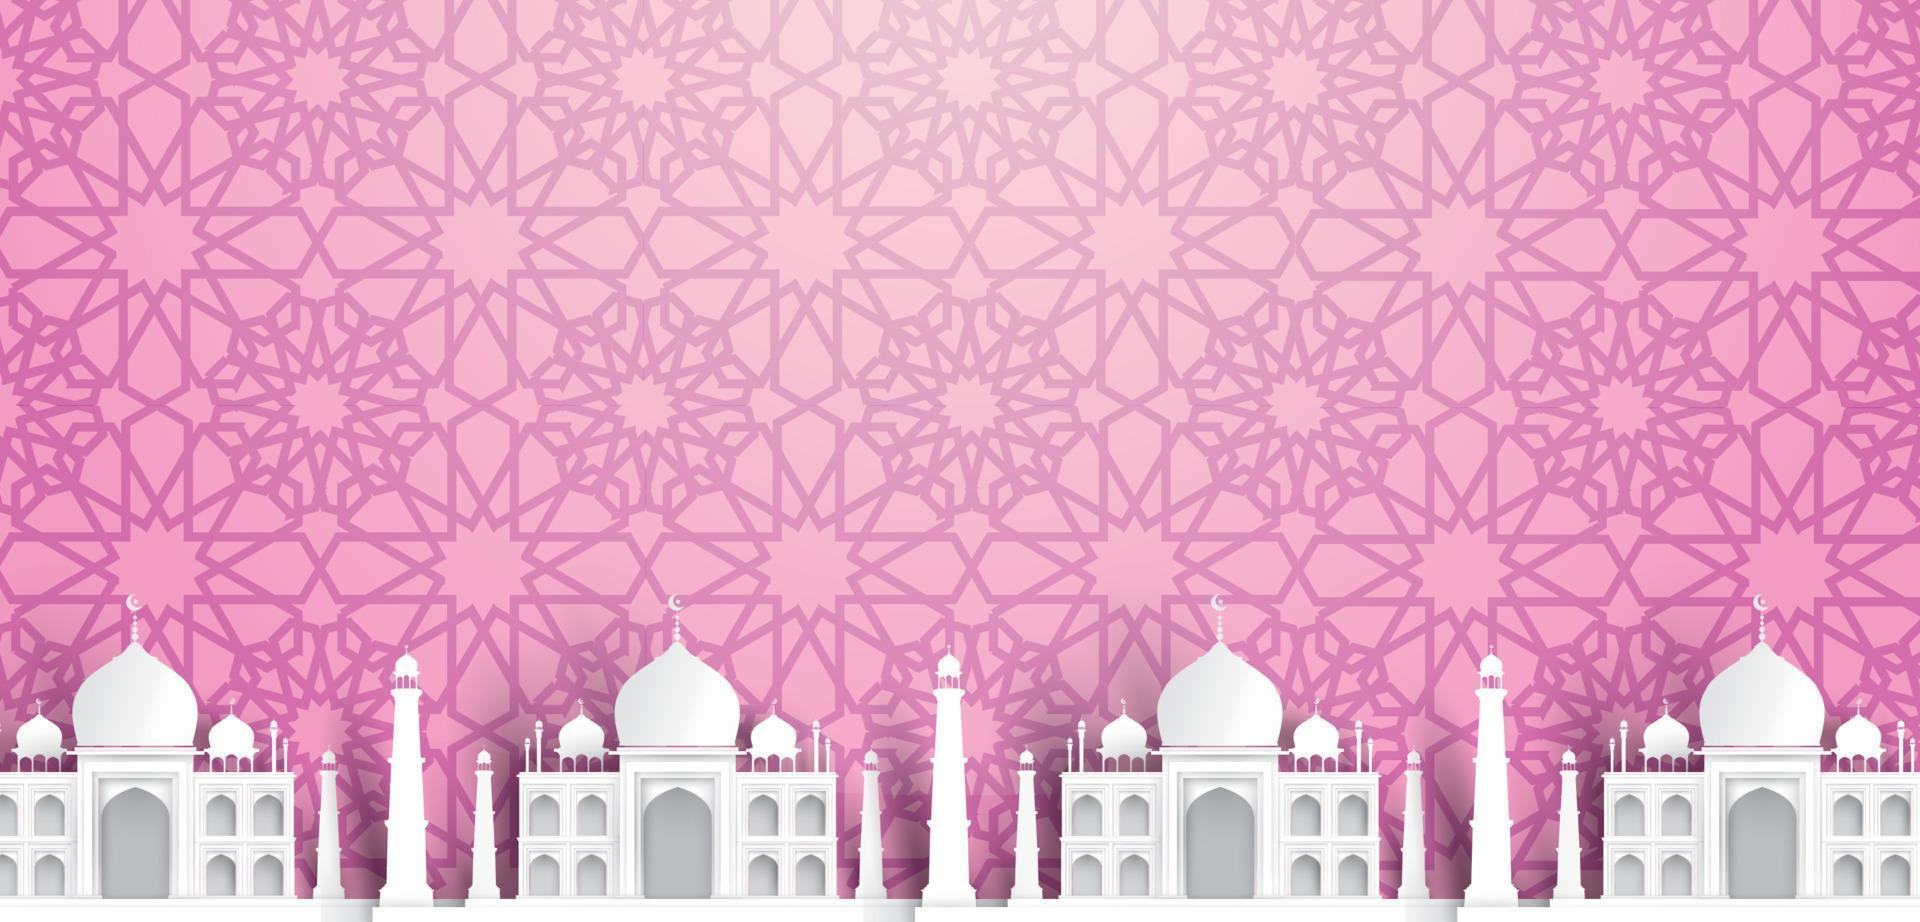 tom moskétextbakgrund, modern elegant islamisk design vektor